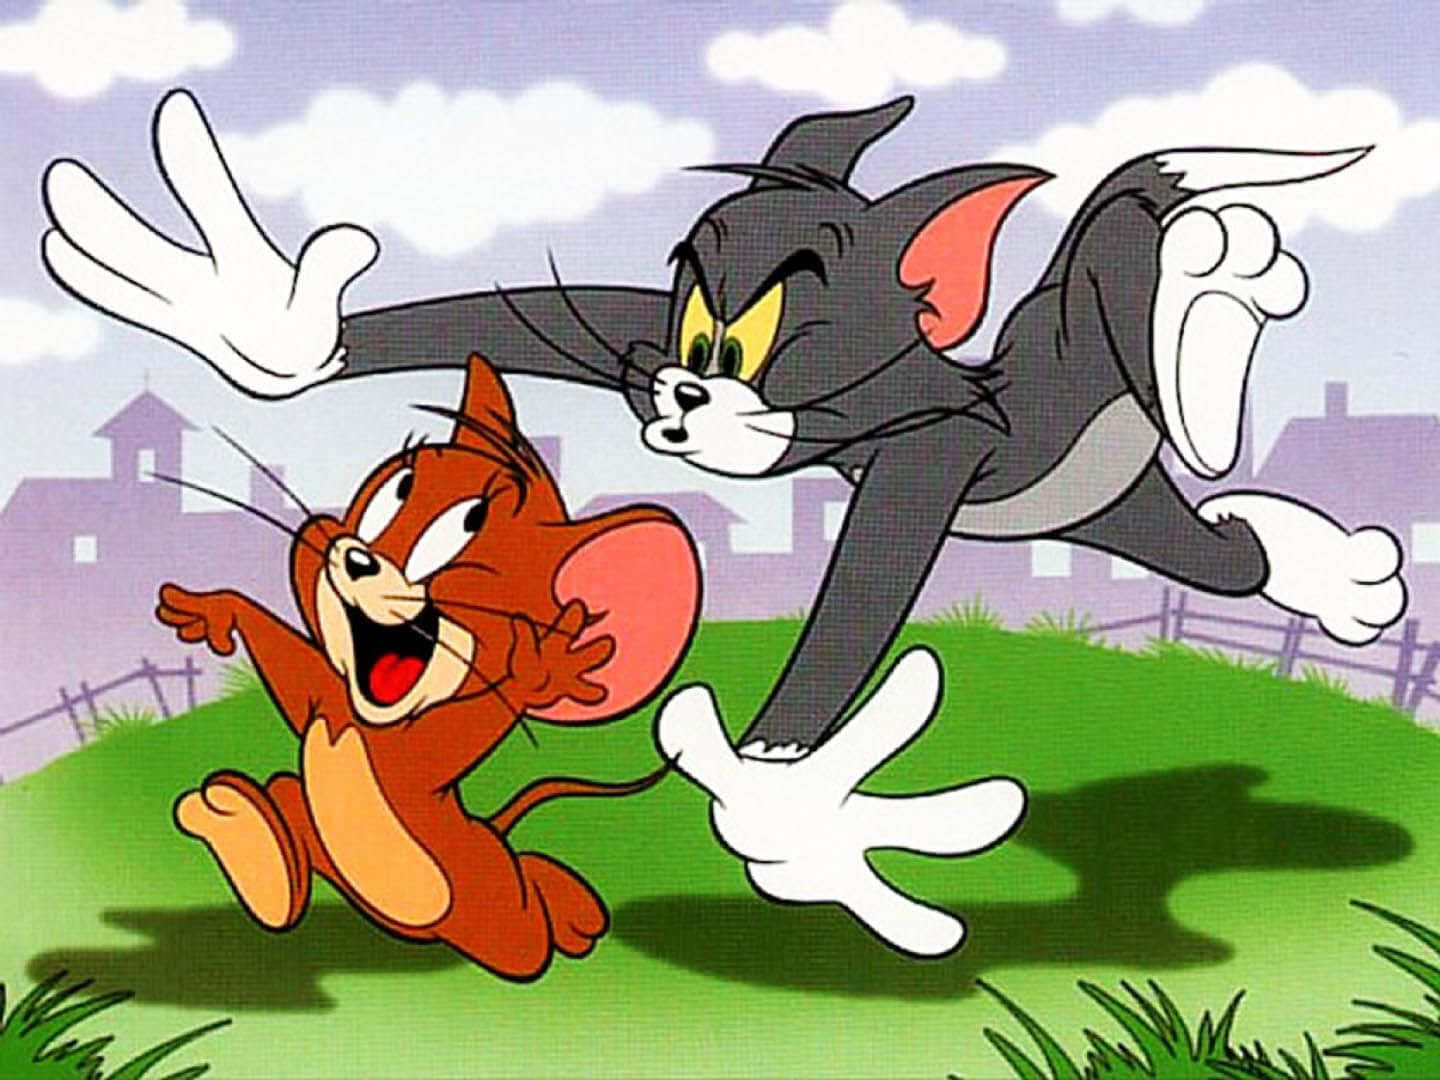 Tom og Jerry kommer i en klassisk klovneagtig sjov kamp. Wallpaper